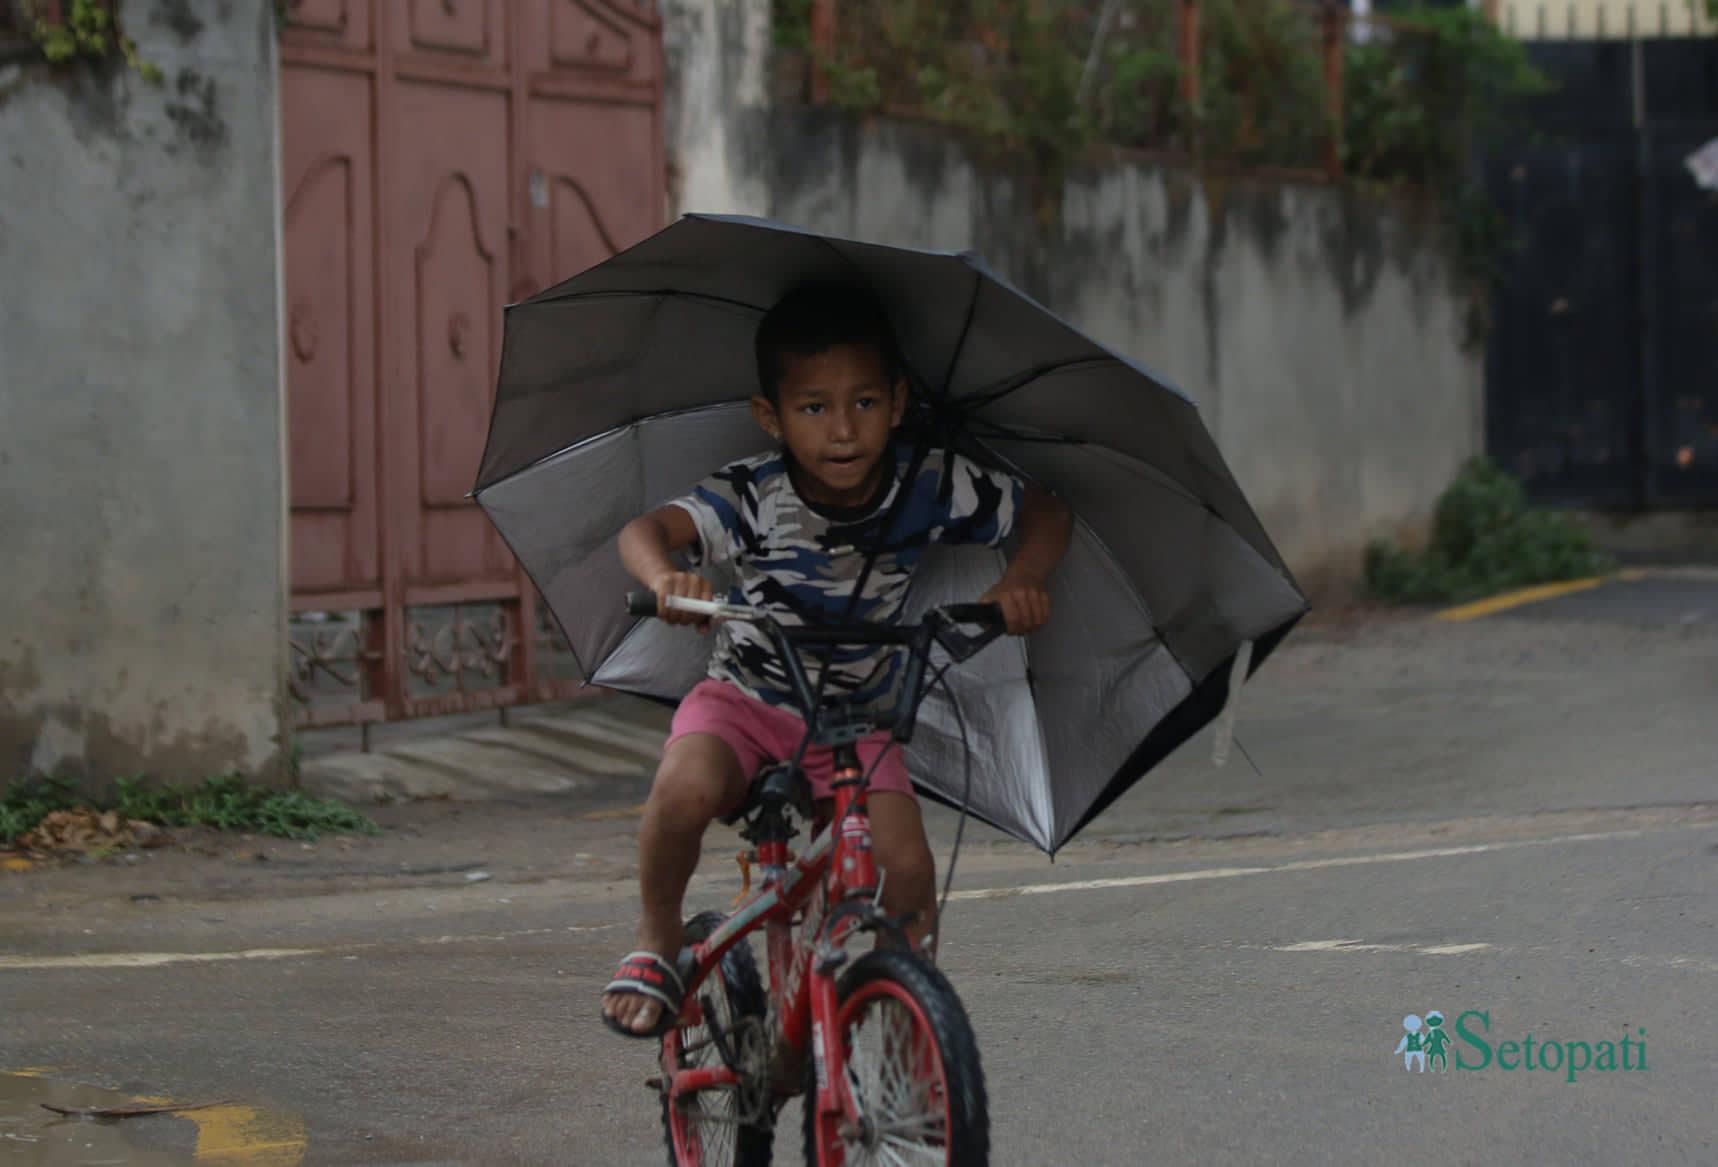 काठमाडौंको सामाखुसीमा पानी परेपछि छाता ओढेर साइकल चलाउँदै एक बालक। तस्बिरः नवीनबाबु गुरूङ/सेतोपाटी